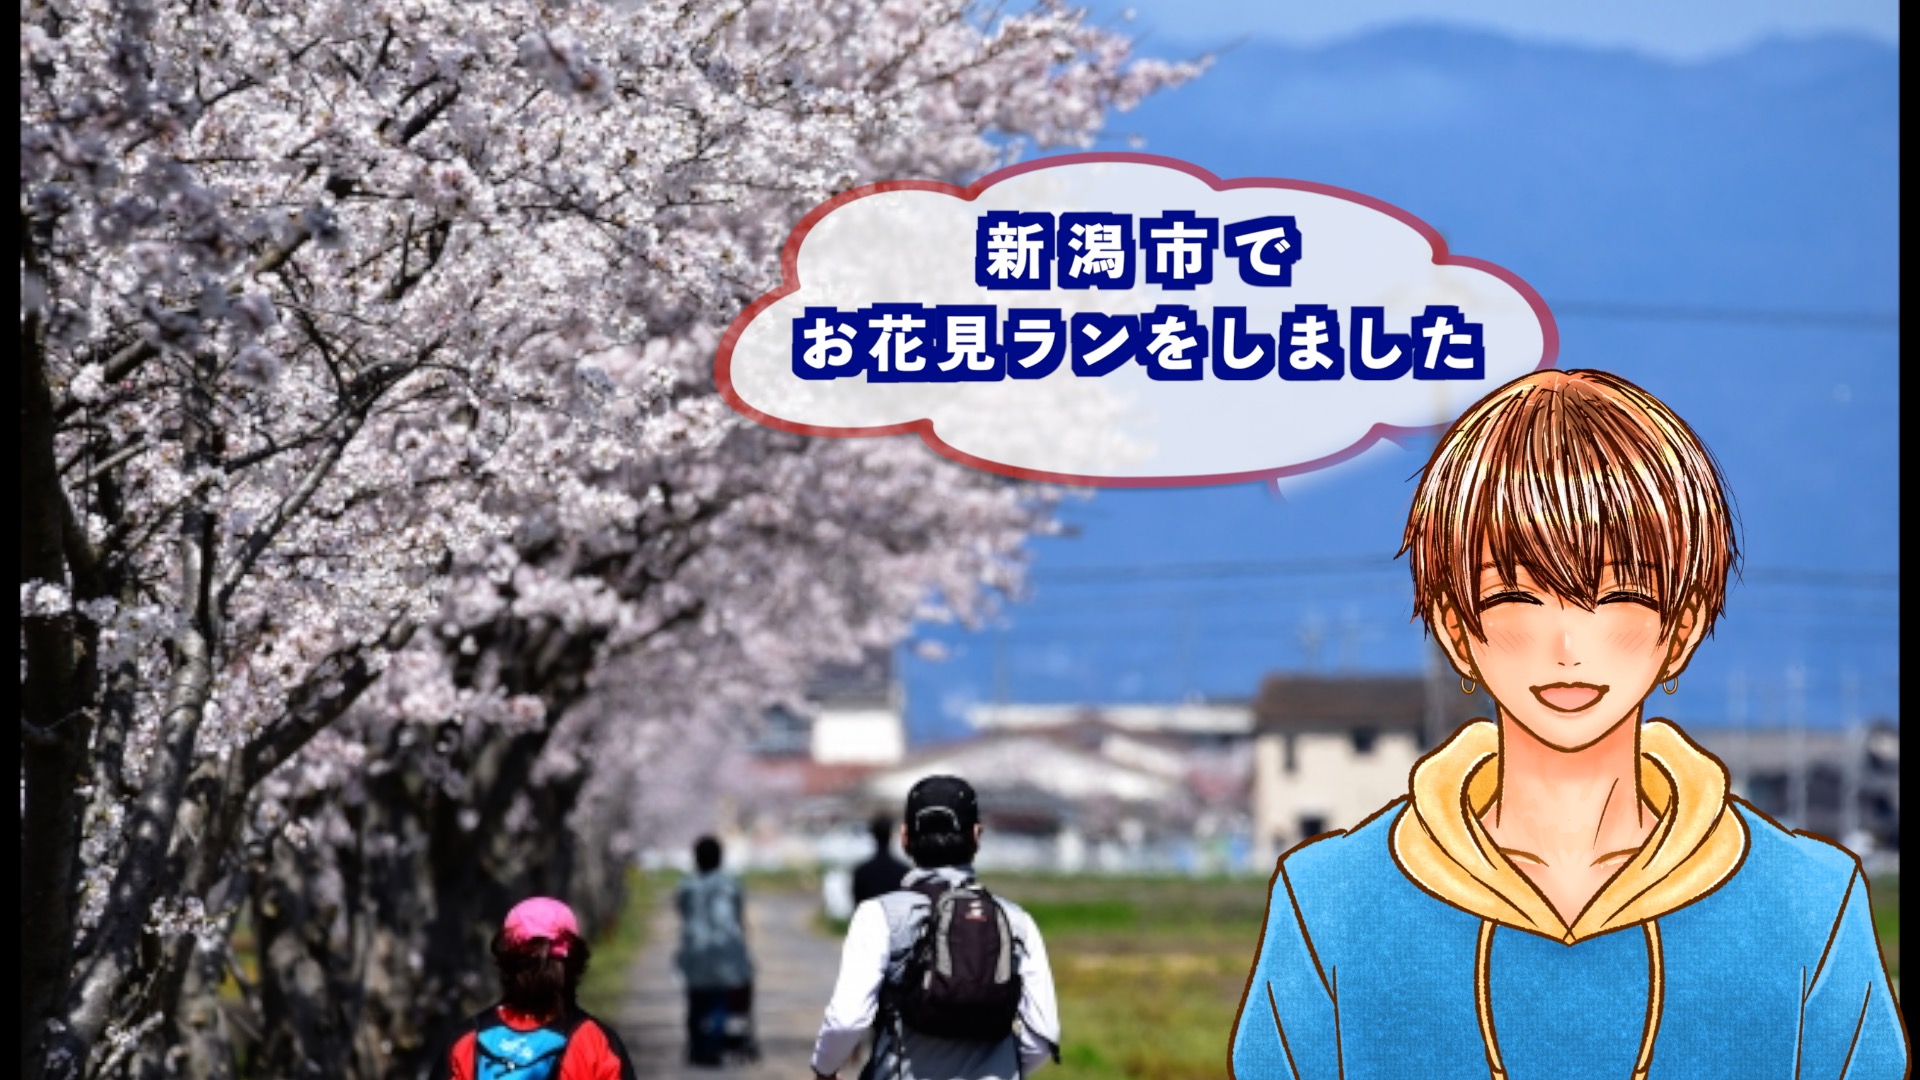 『お花見RUN(新潟市)』のアイキャッチ画像